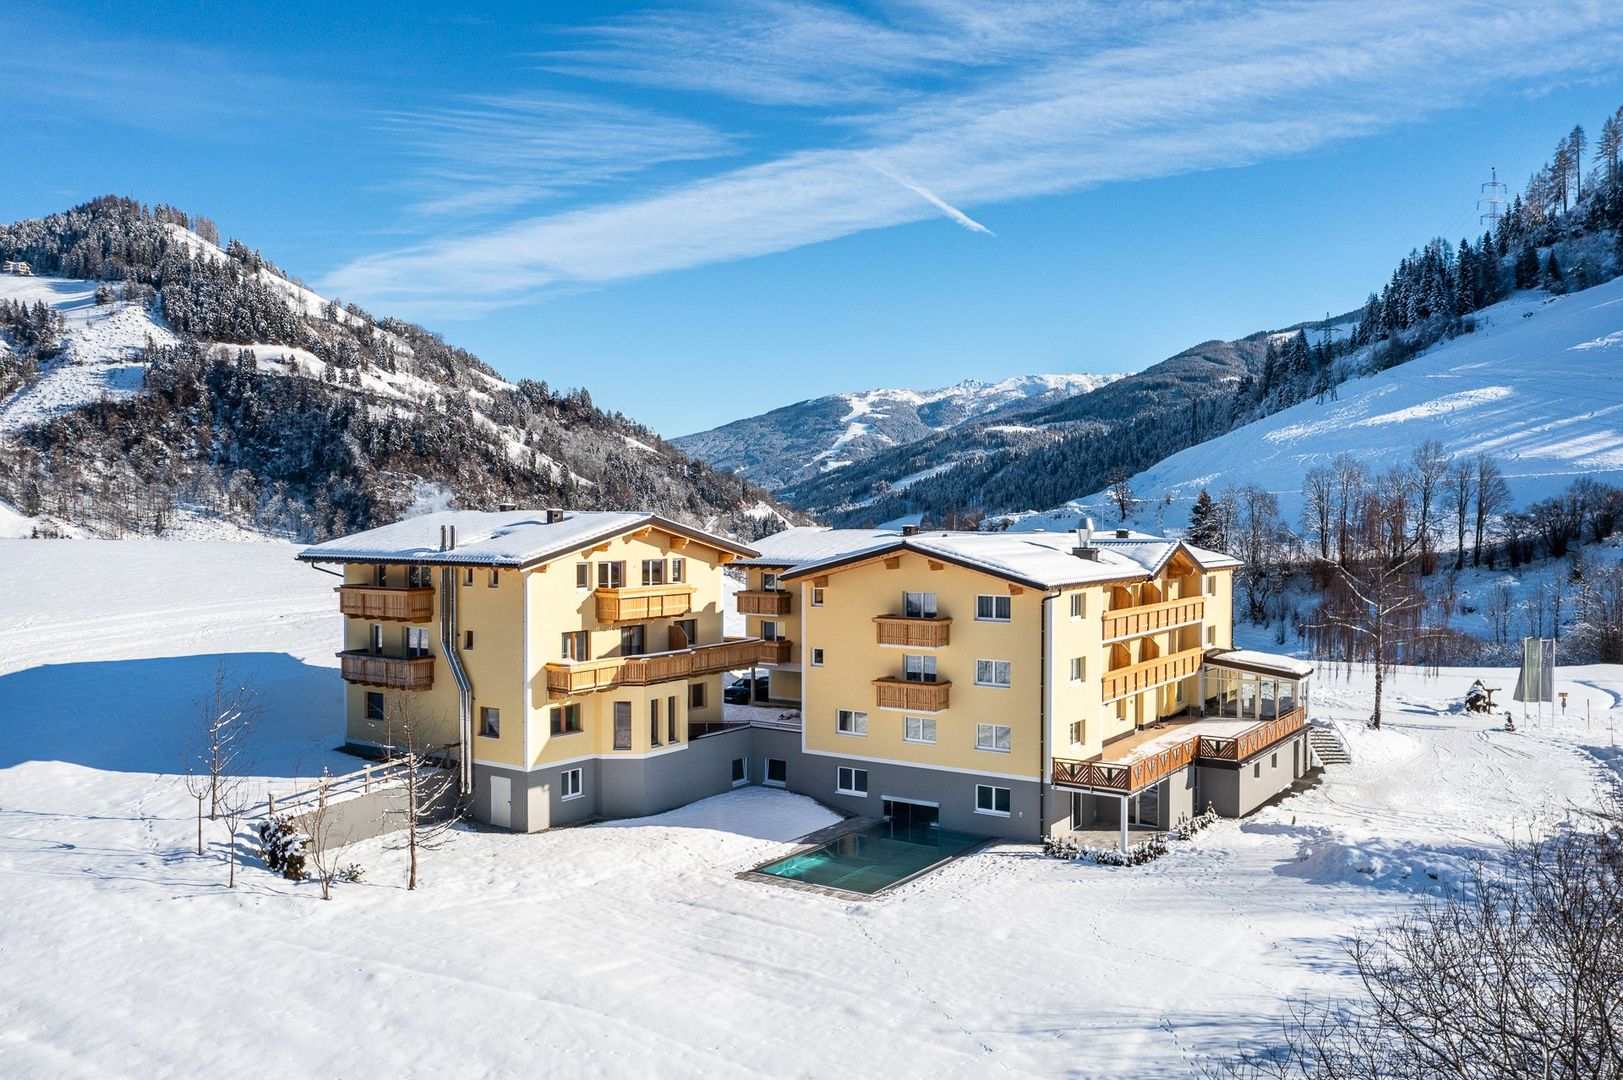 Meer info over Der Alpenblick  bij Wintertrex